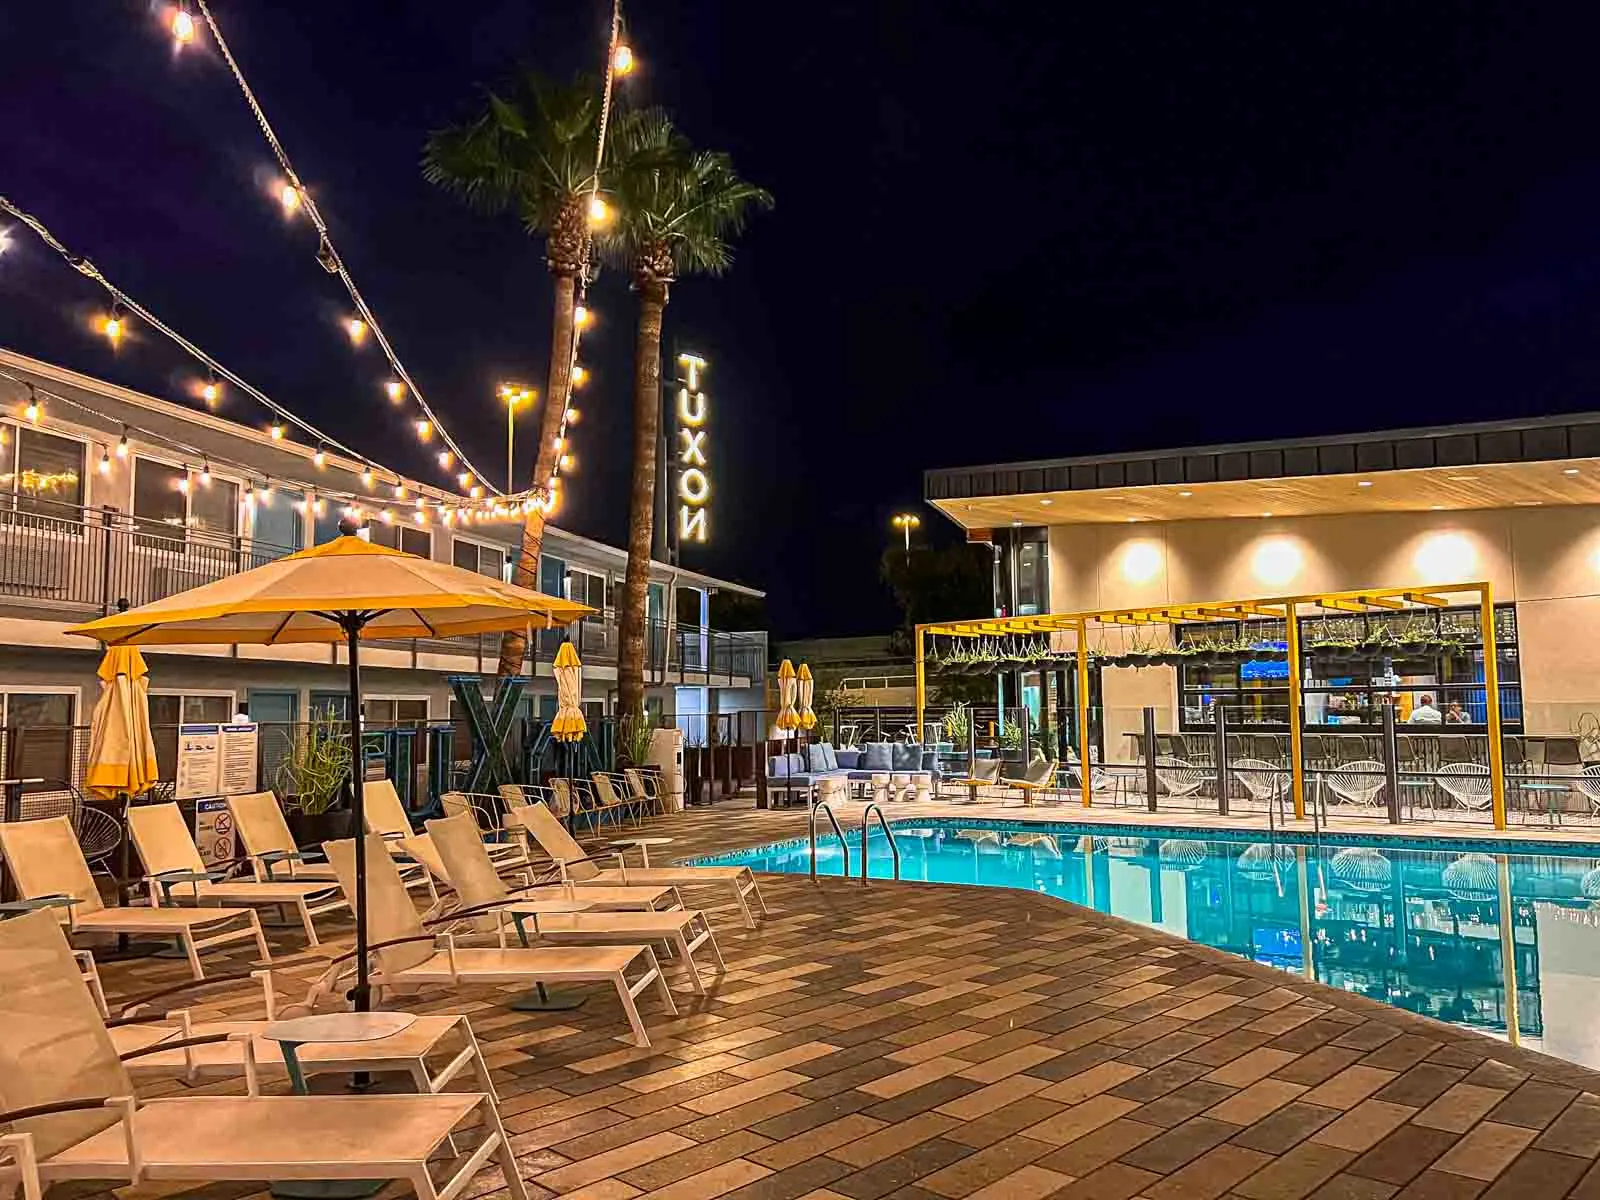 Tuxon Hotel Pool at Night in Tucson